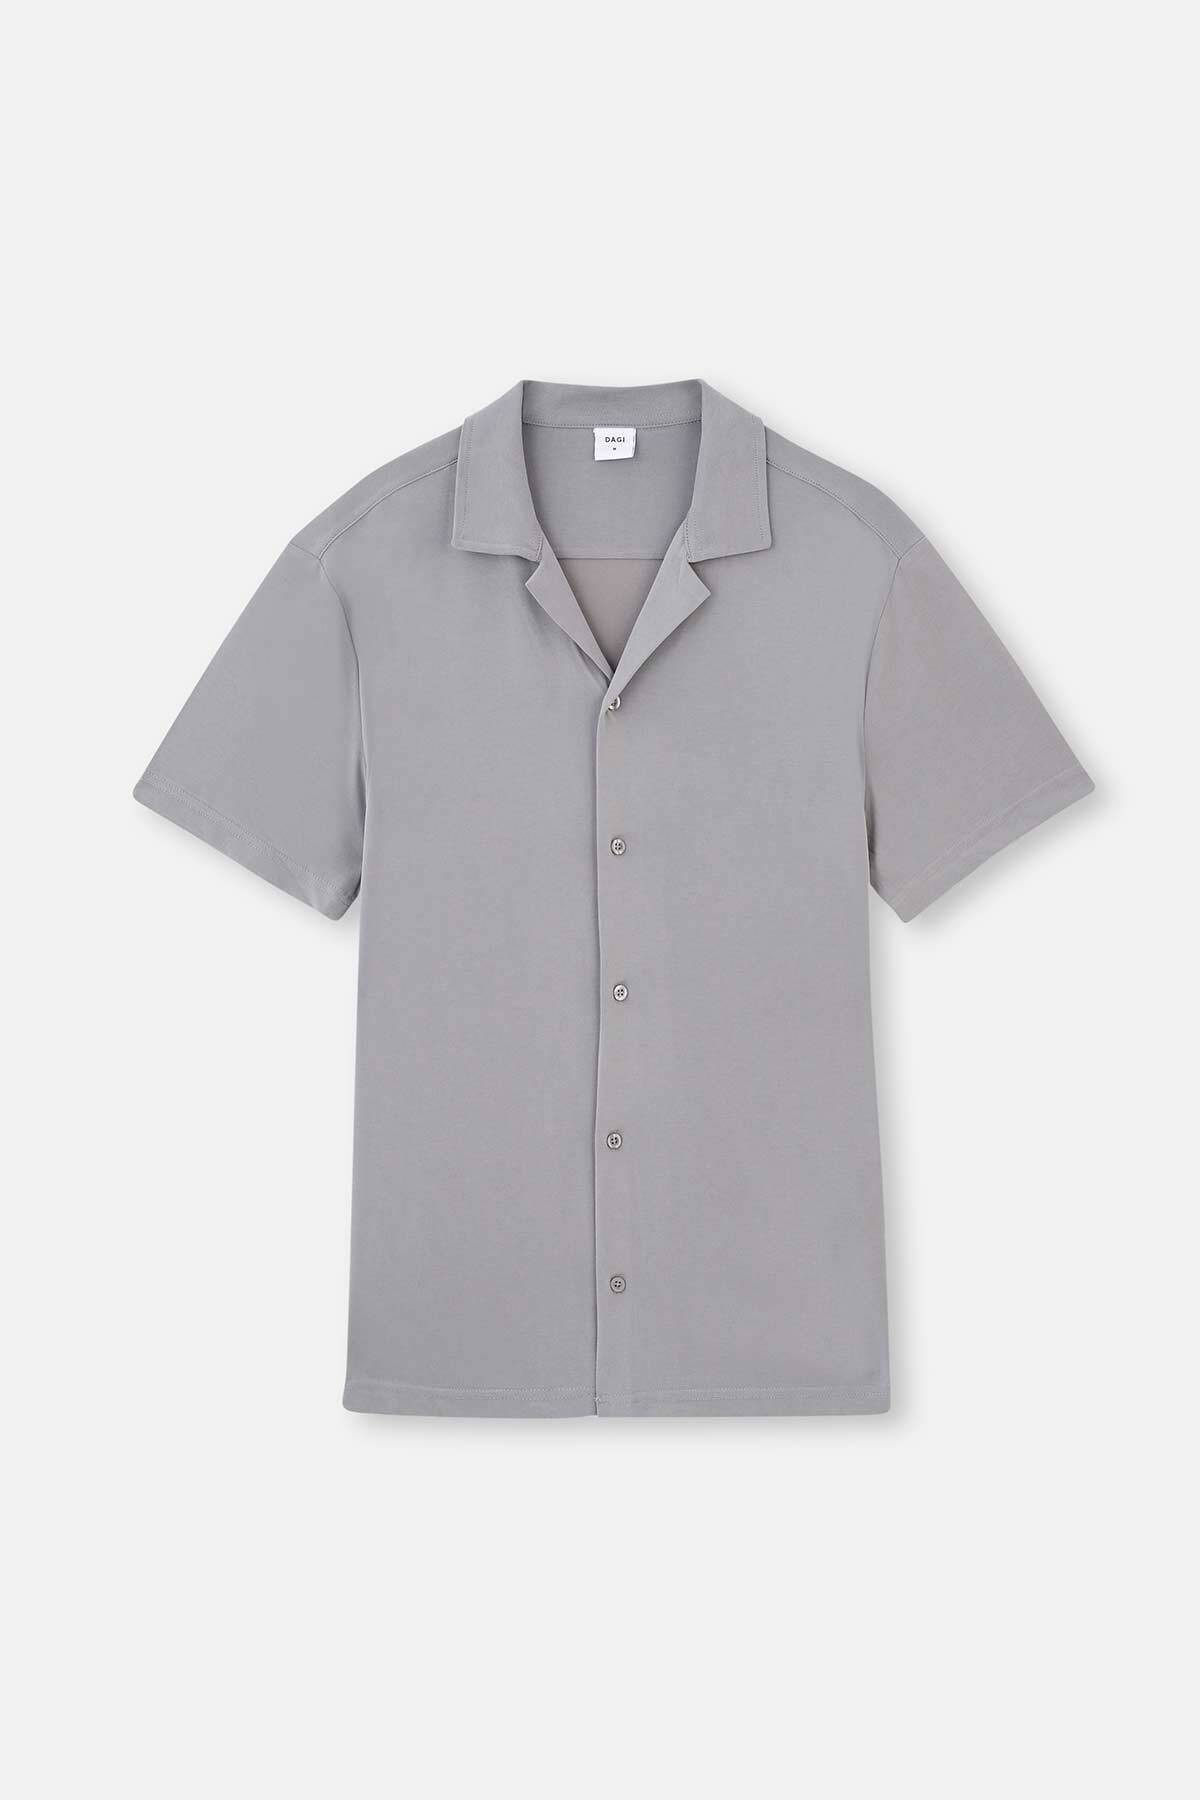 Dagi Gray Cupra Short Sleeve Modal Shirt